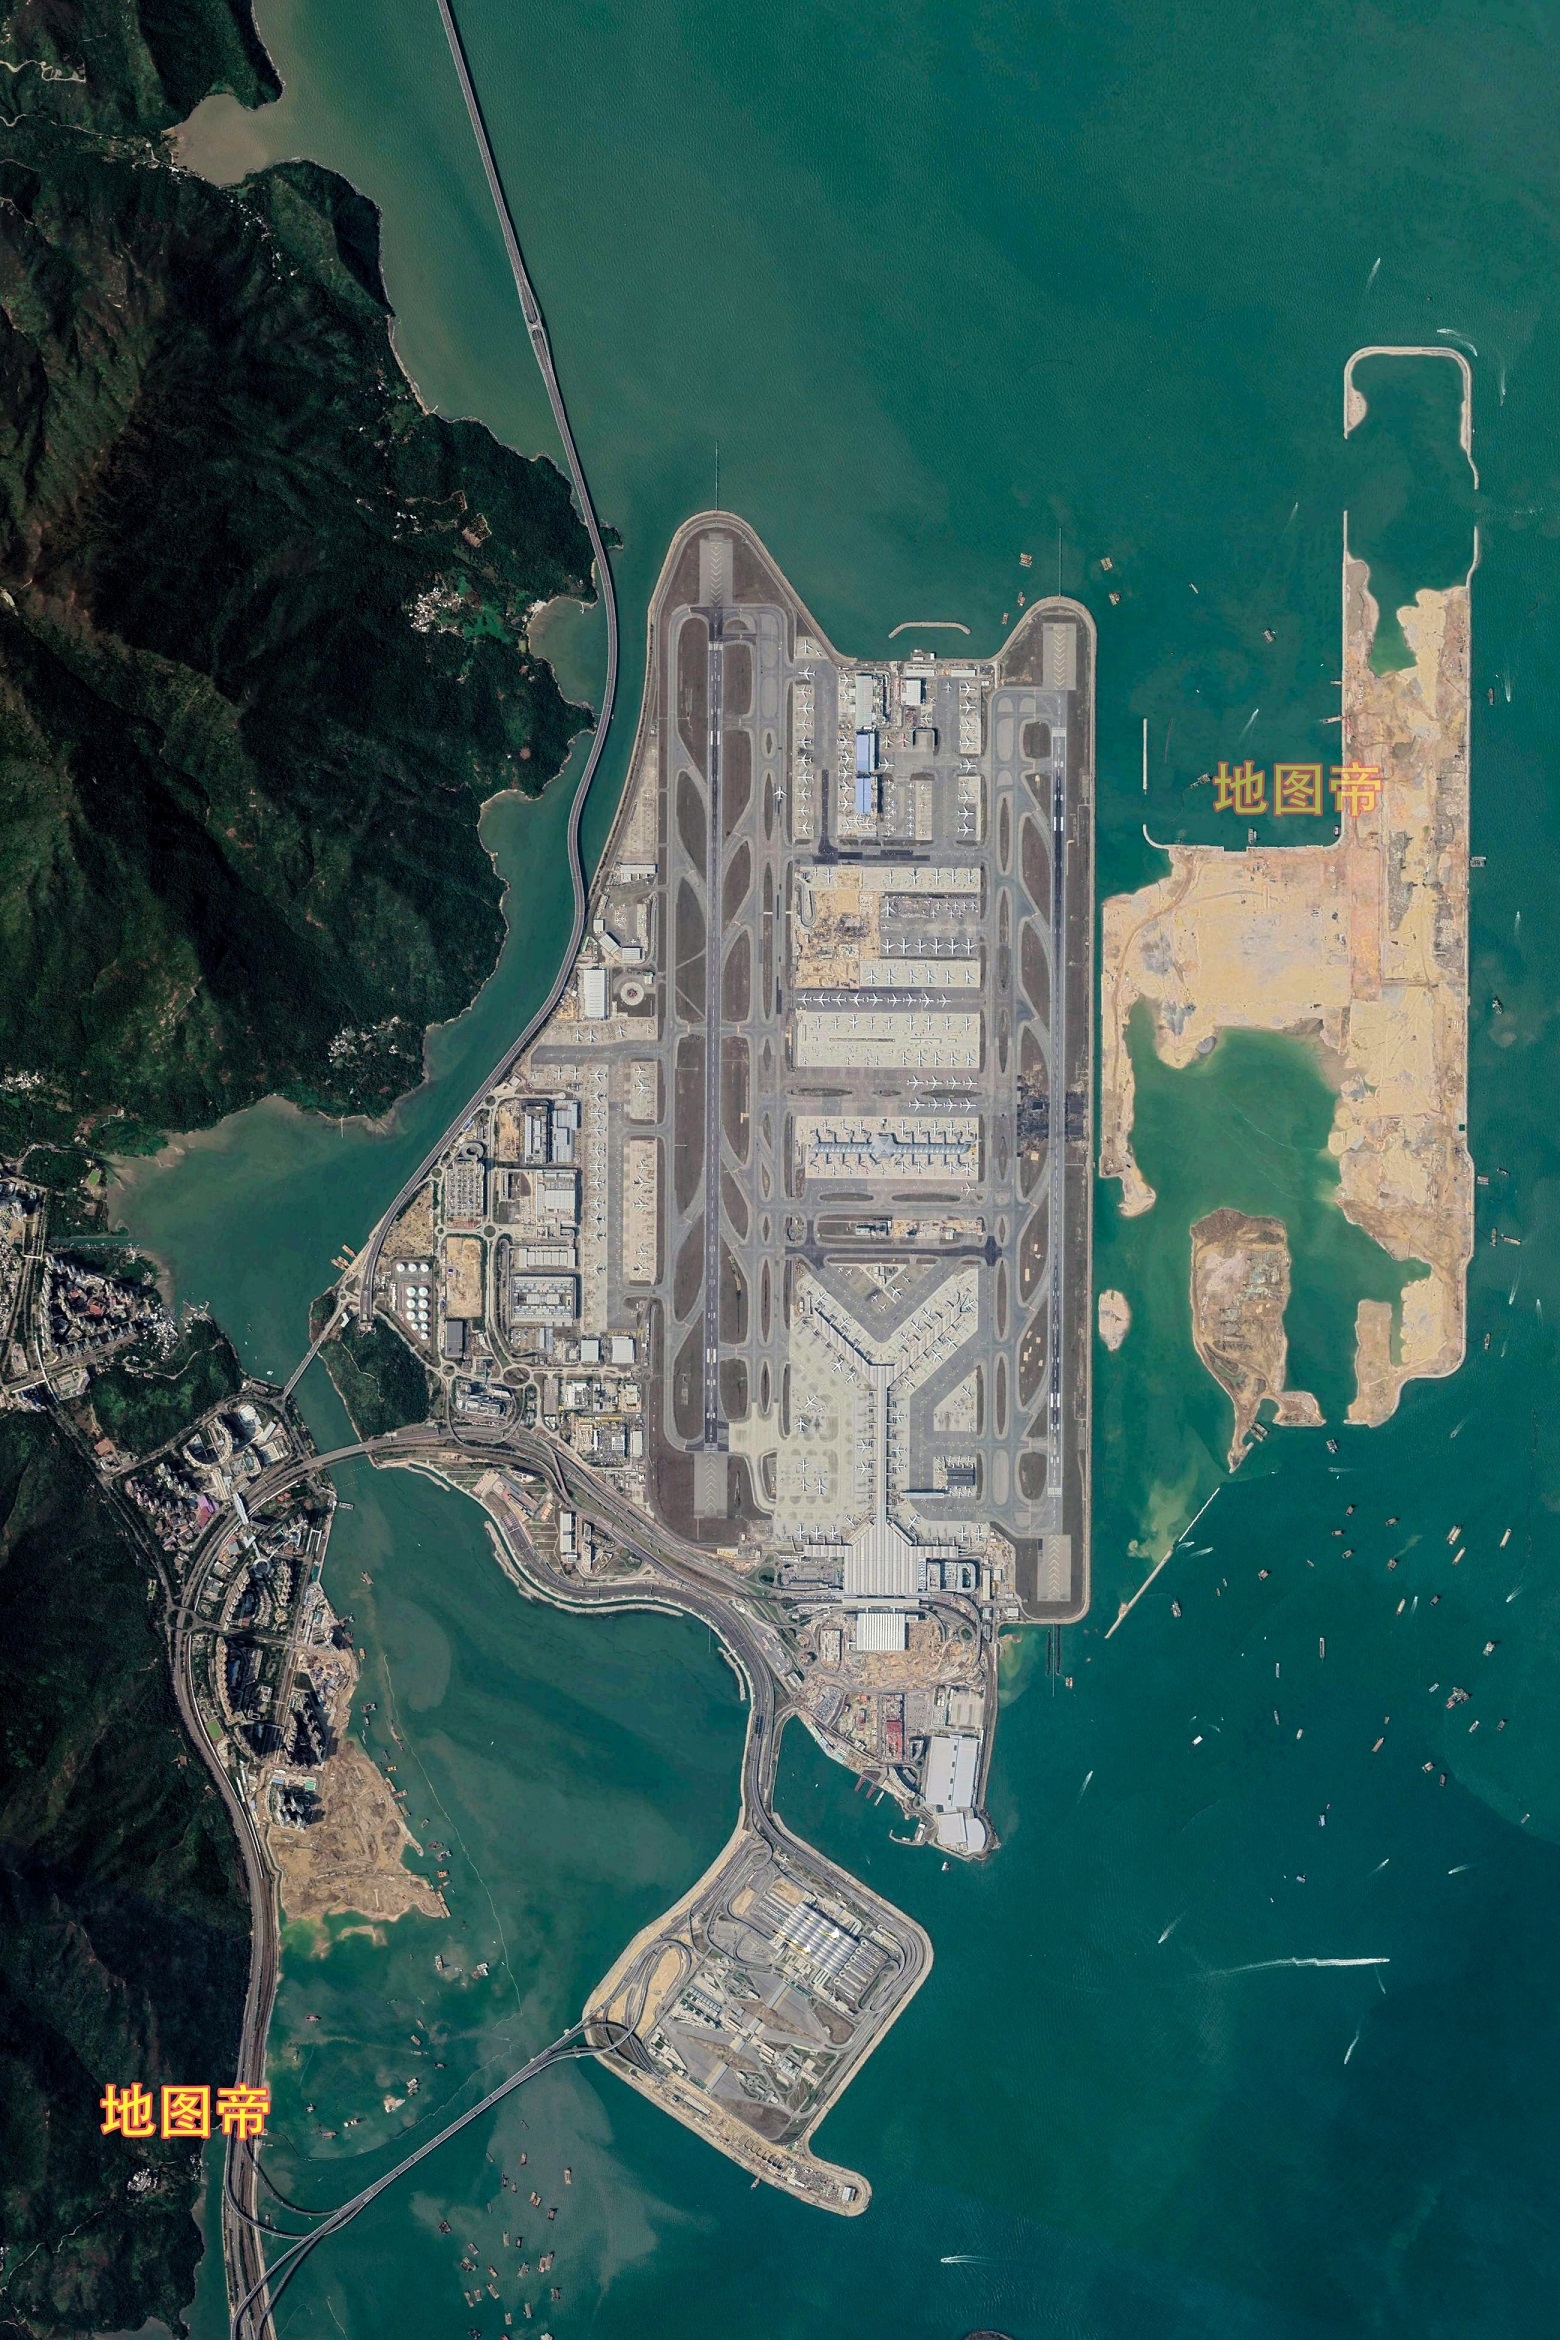 香港国际机场2016年已启动t3航站楼建设的填海工程,t3航站楼规划面积